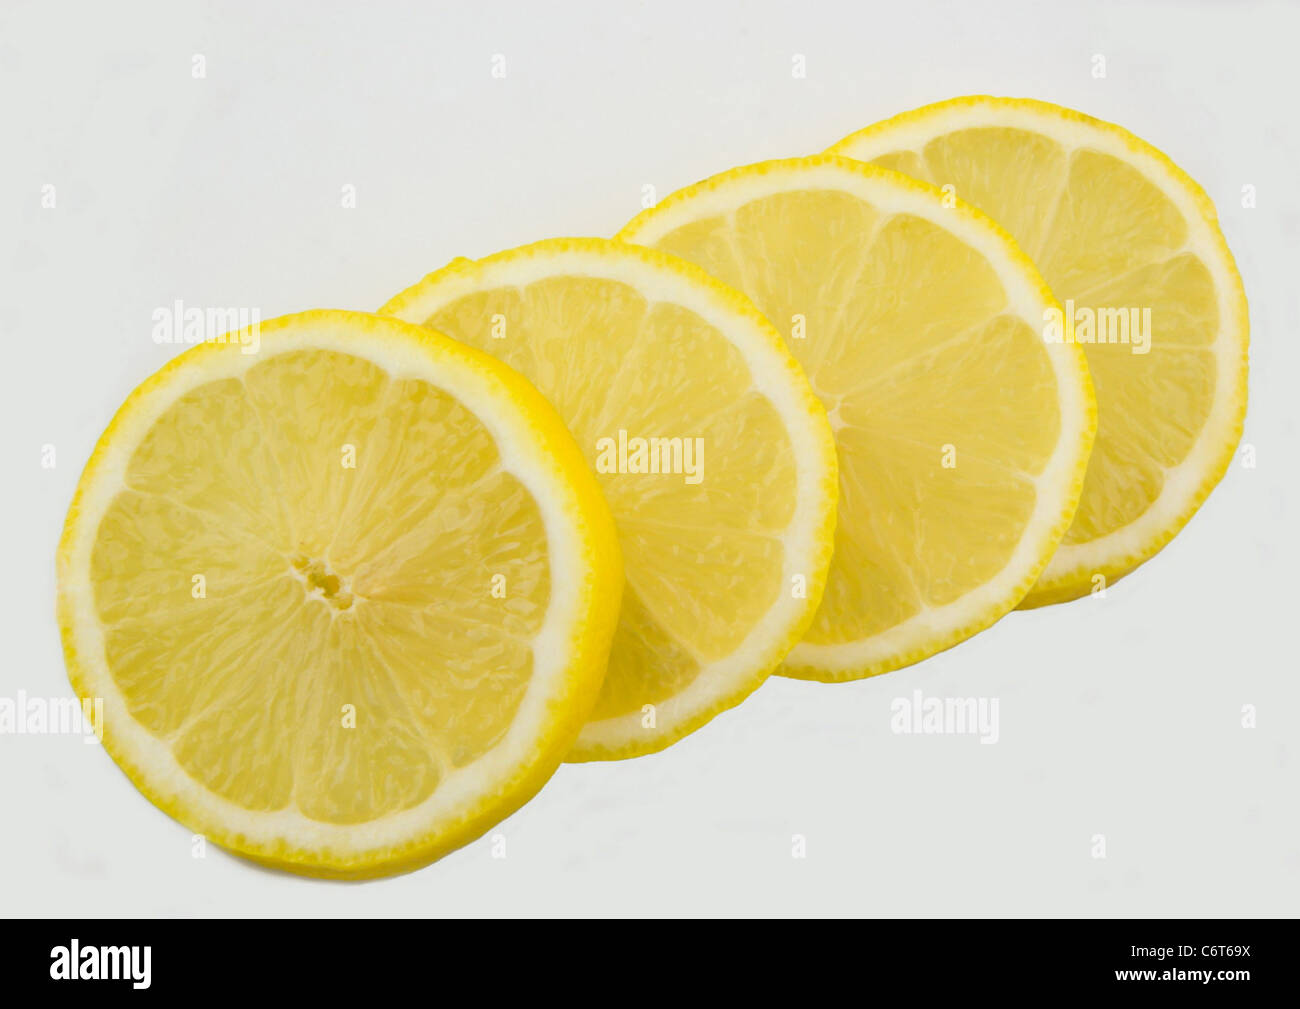 Lemon lime slices isolated on white background Stock Photo